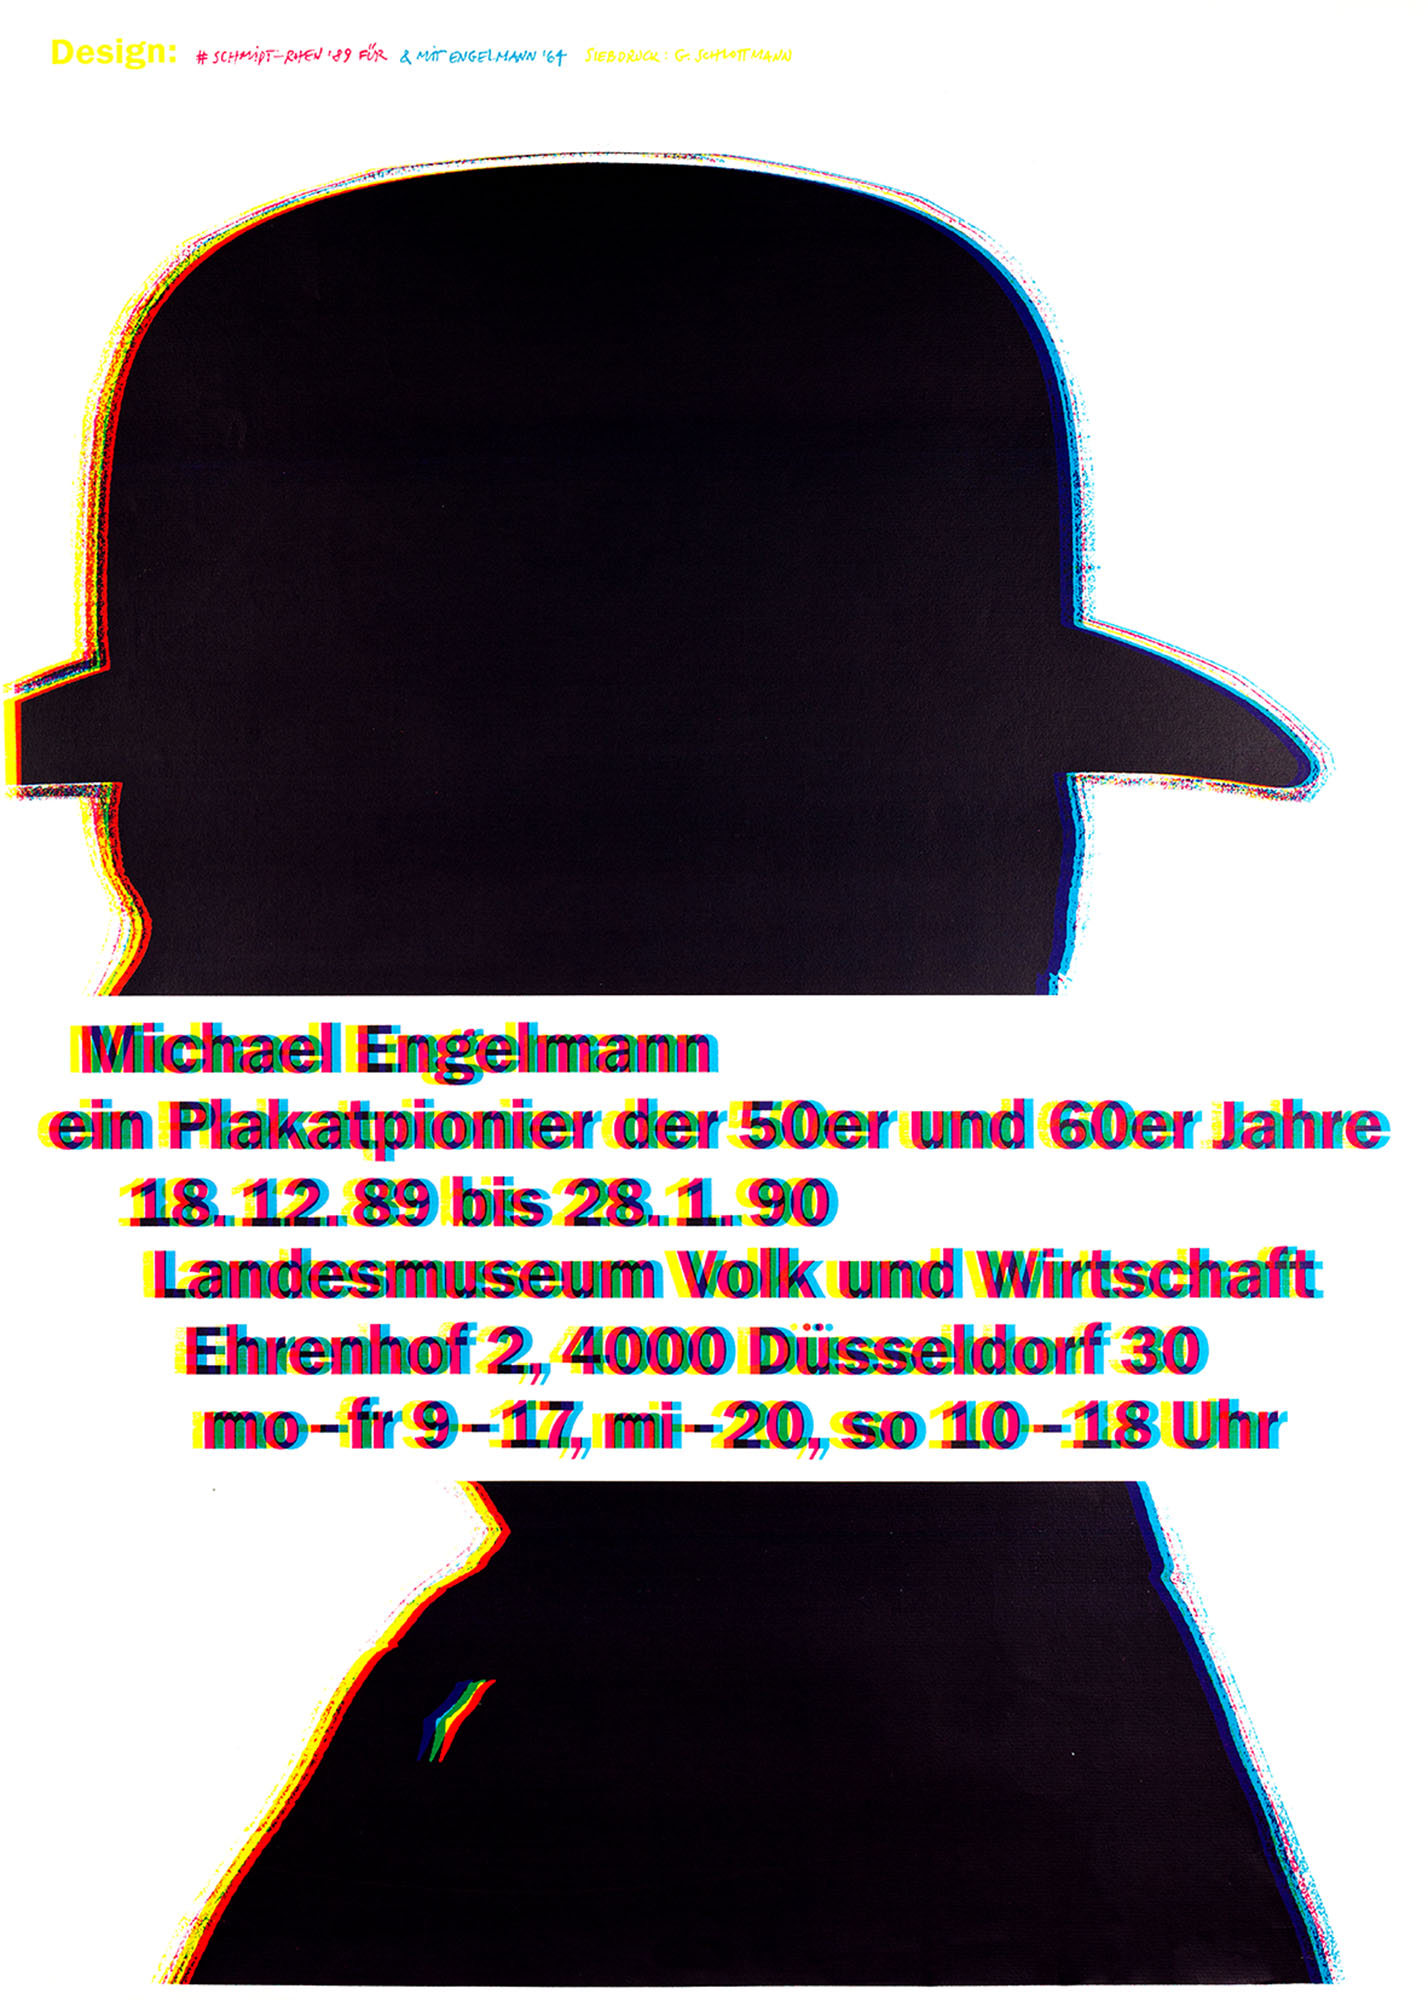 Gestaltet: Helmut Schmidt-Rhen, Jahr: 1989